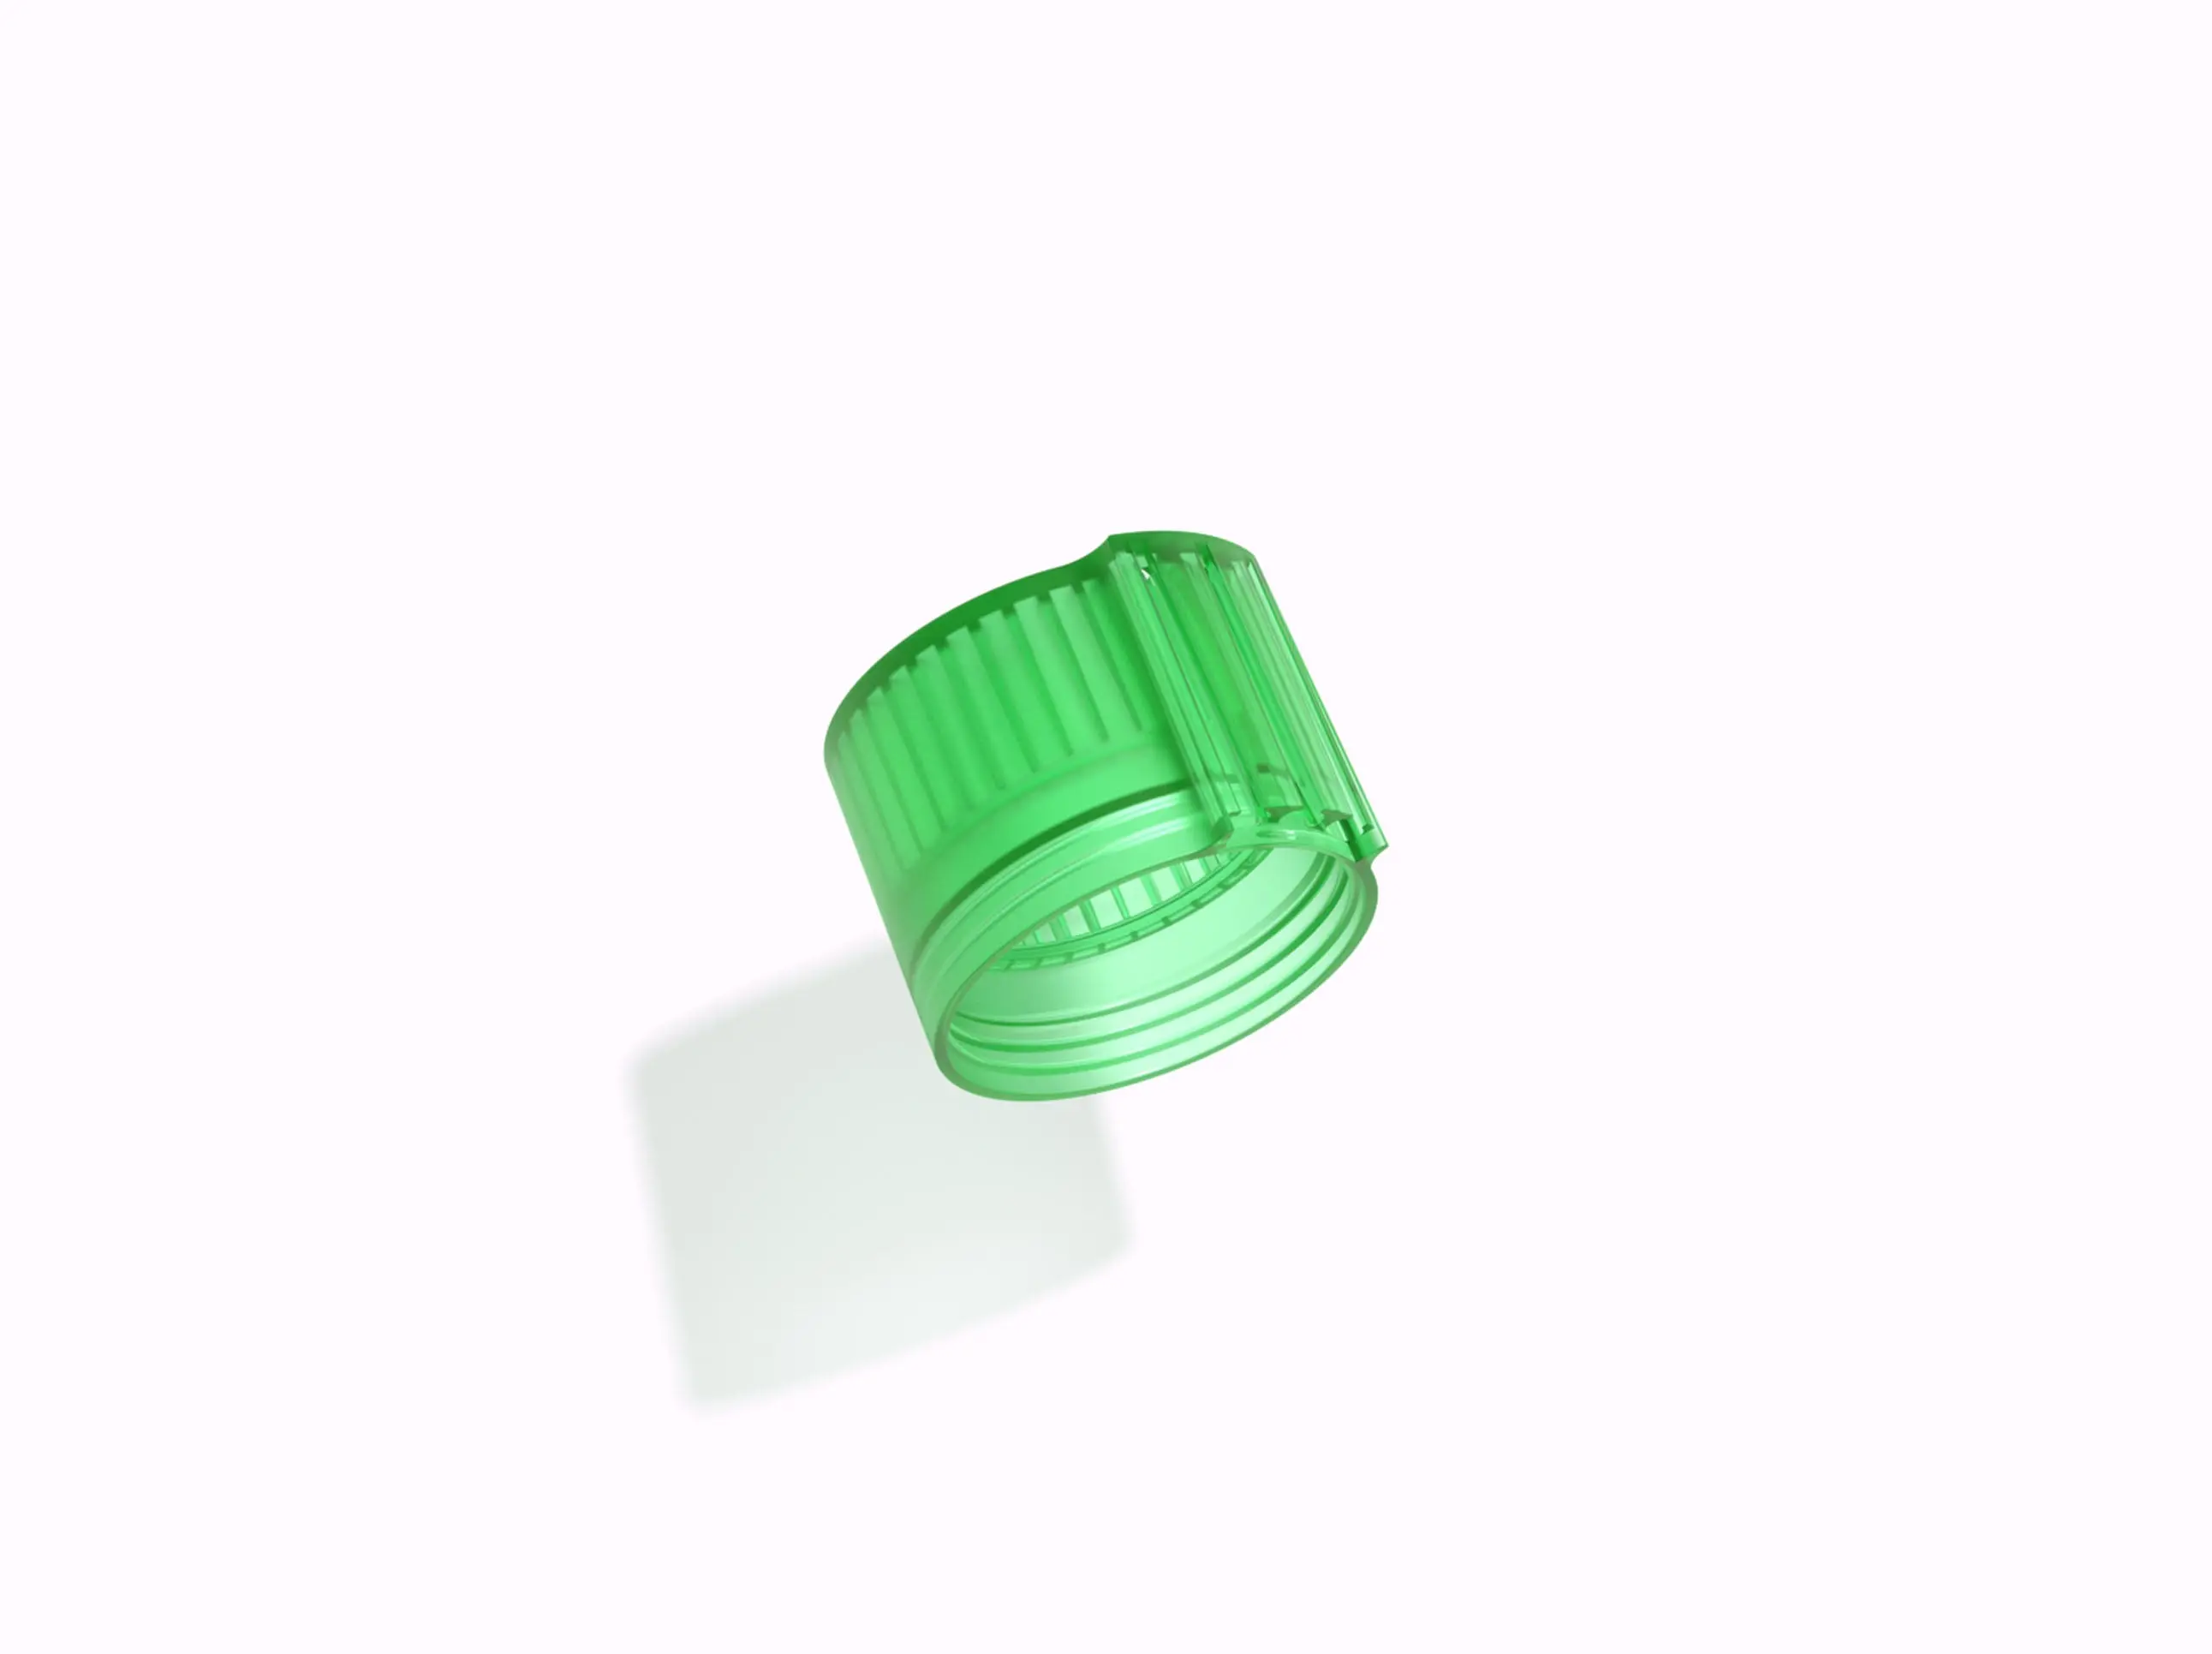 Vibrant Green bottle cap